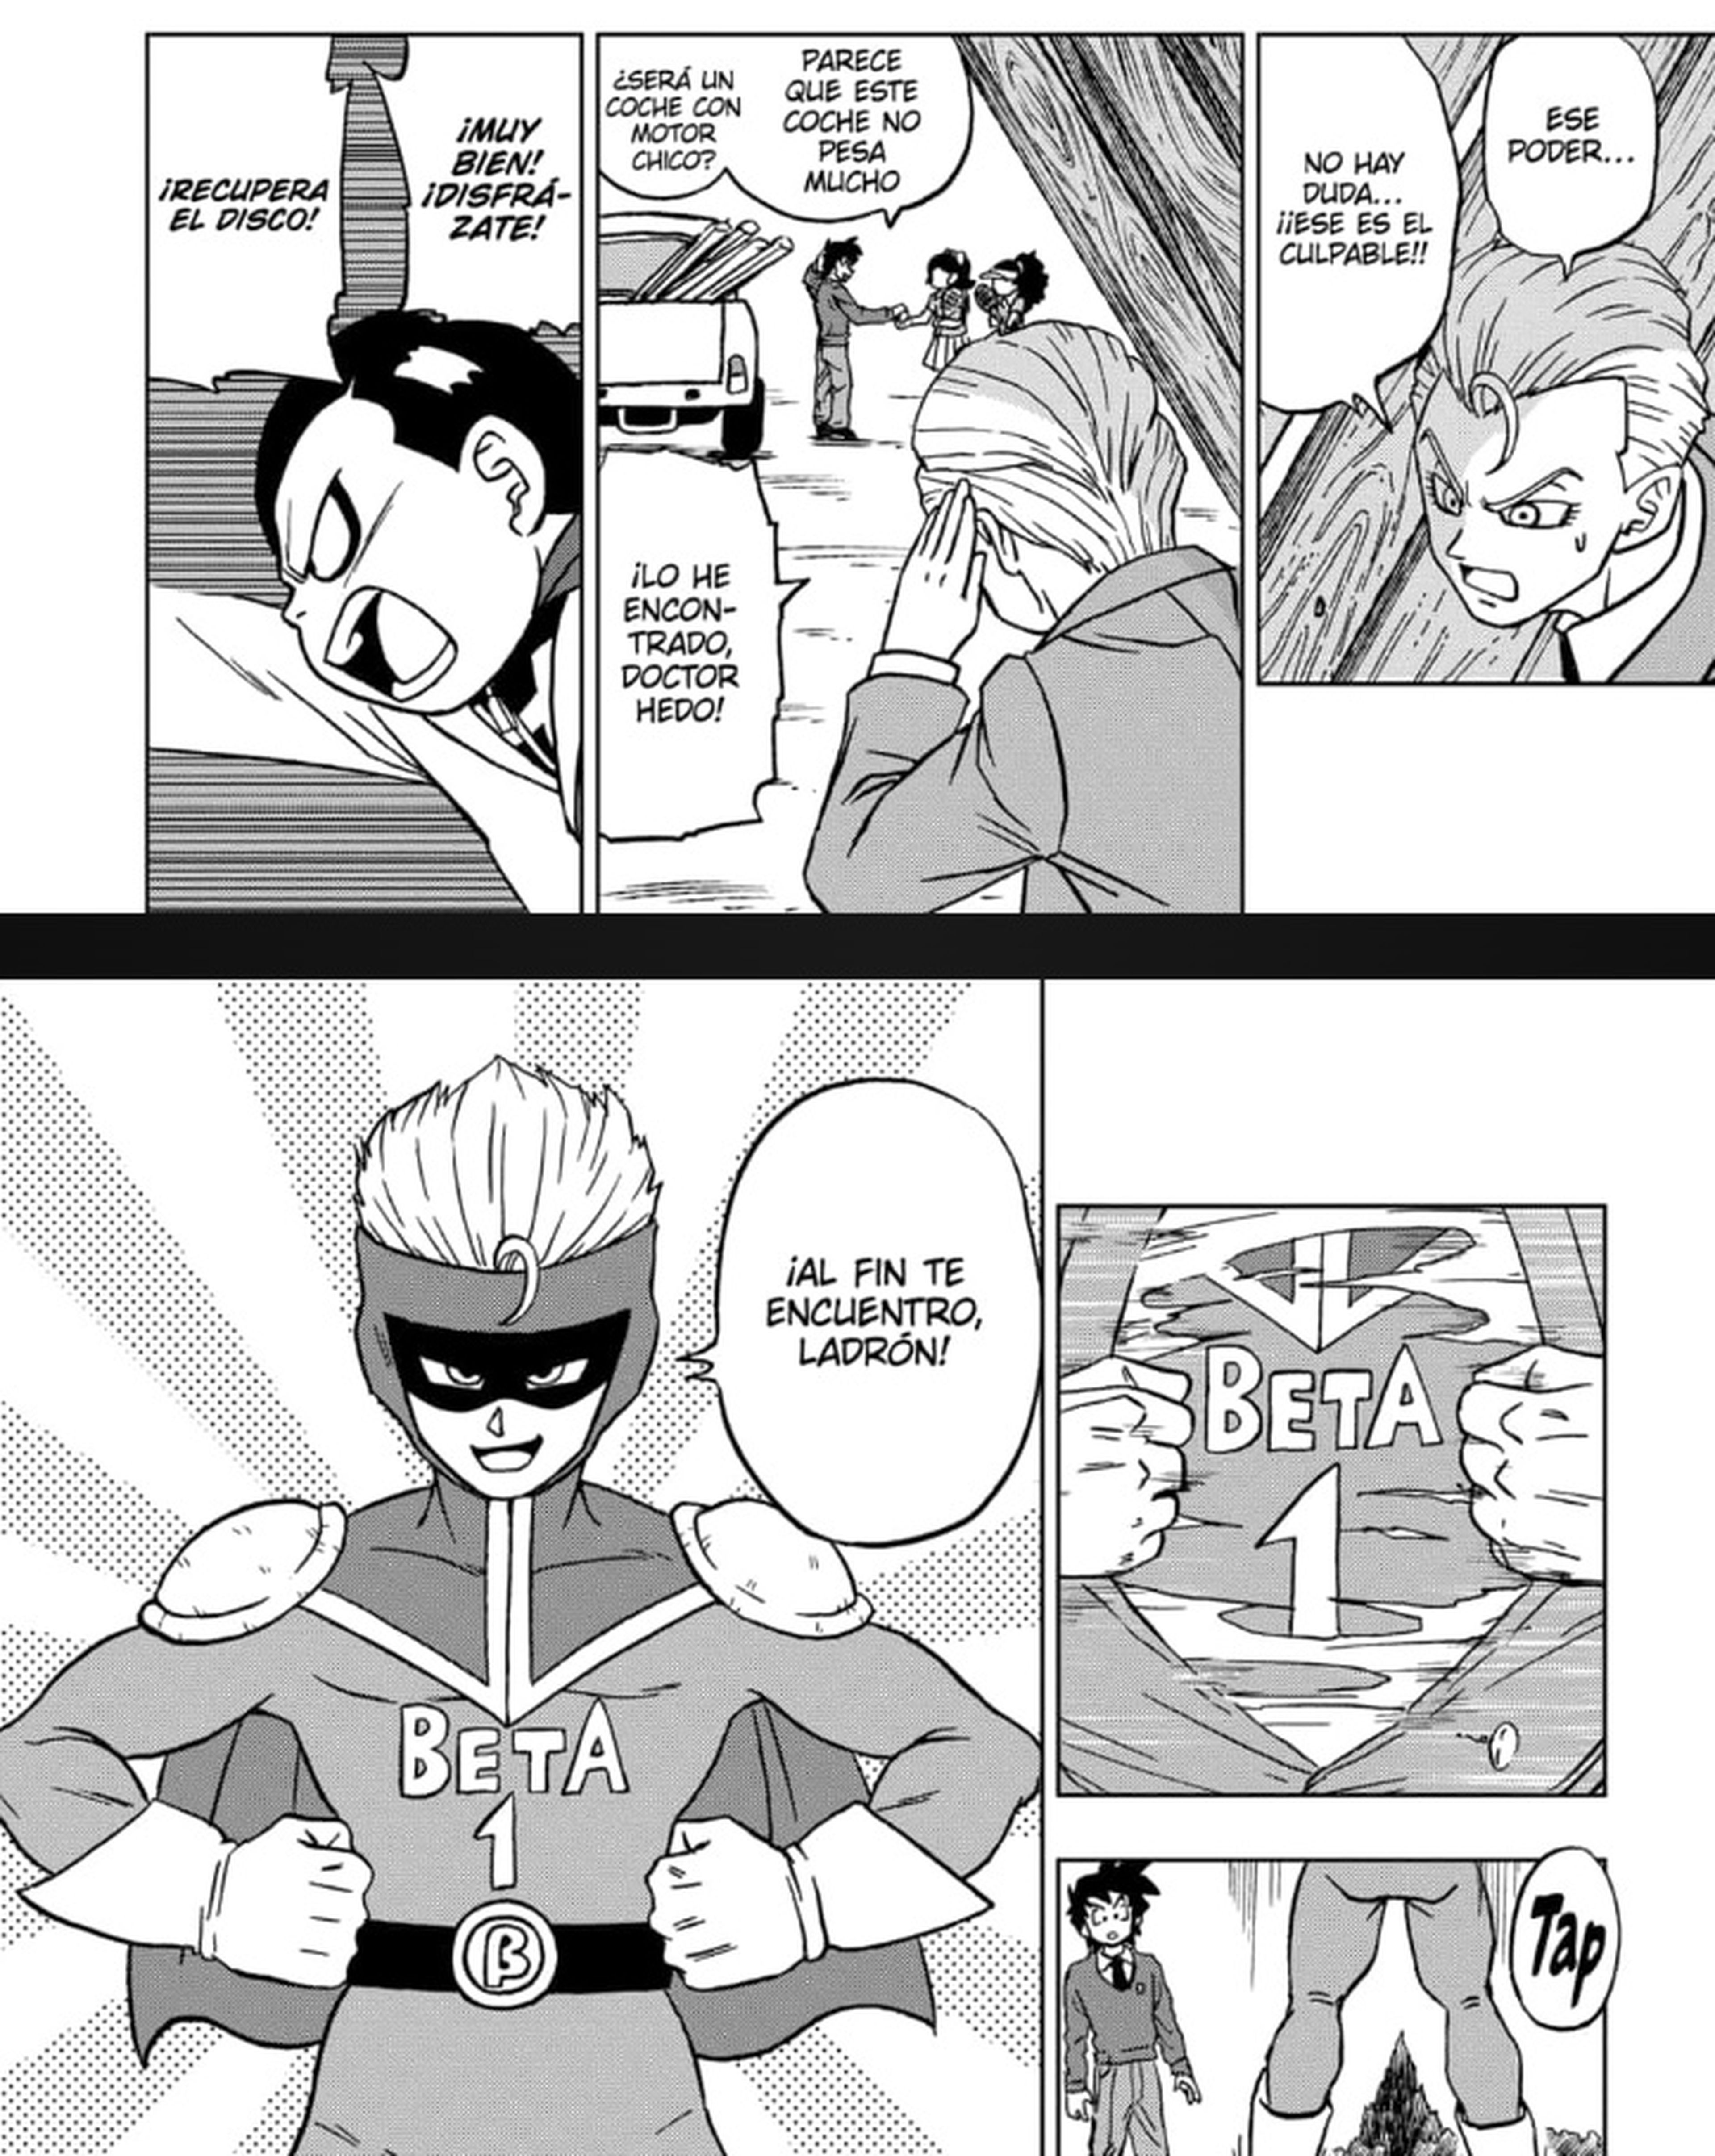 Dragon Ball Super: Spoilers del capítulo 89 muestra la llegada de un nuevo  personaje